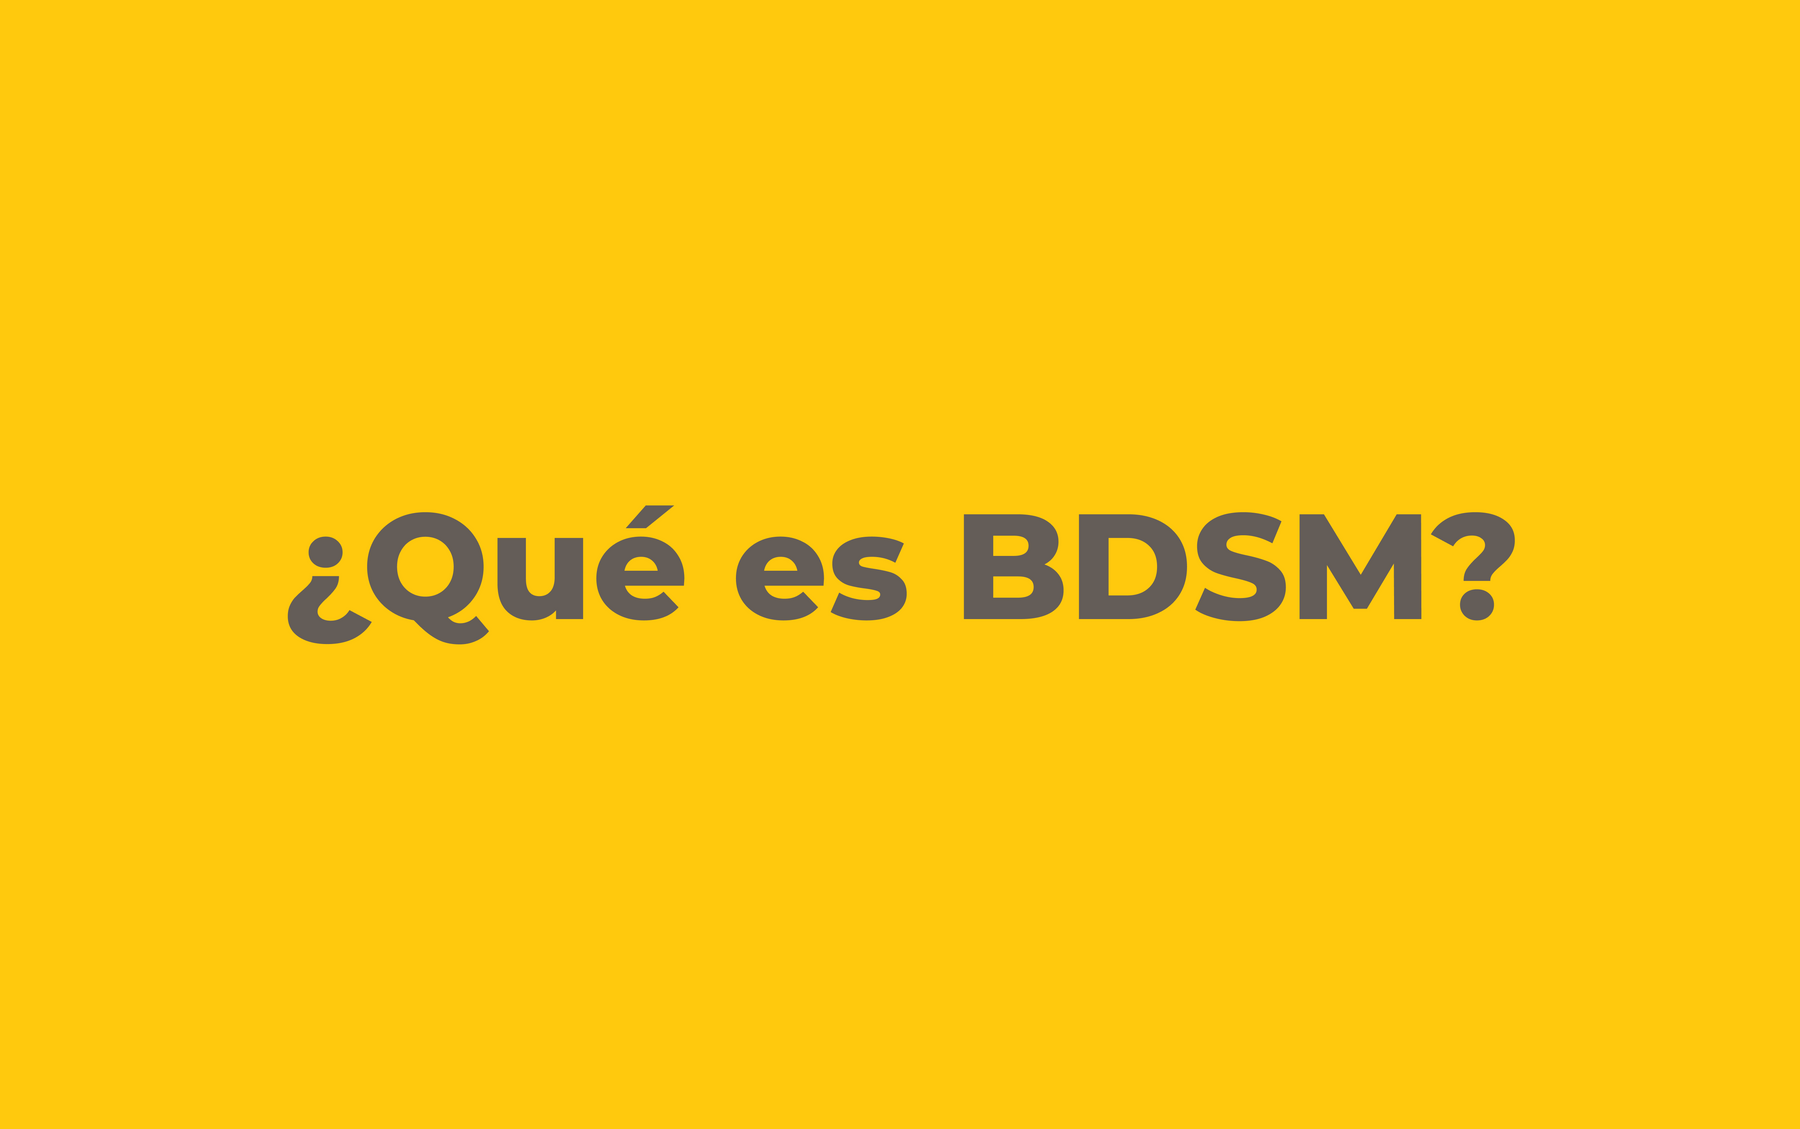 "¿Que es BDSM?" sobre fondo amarillo